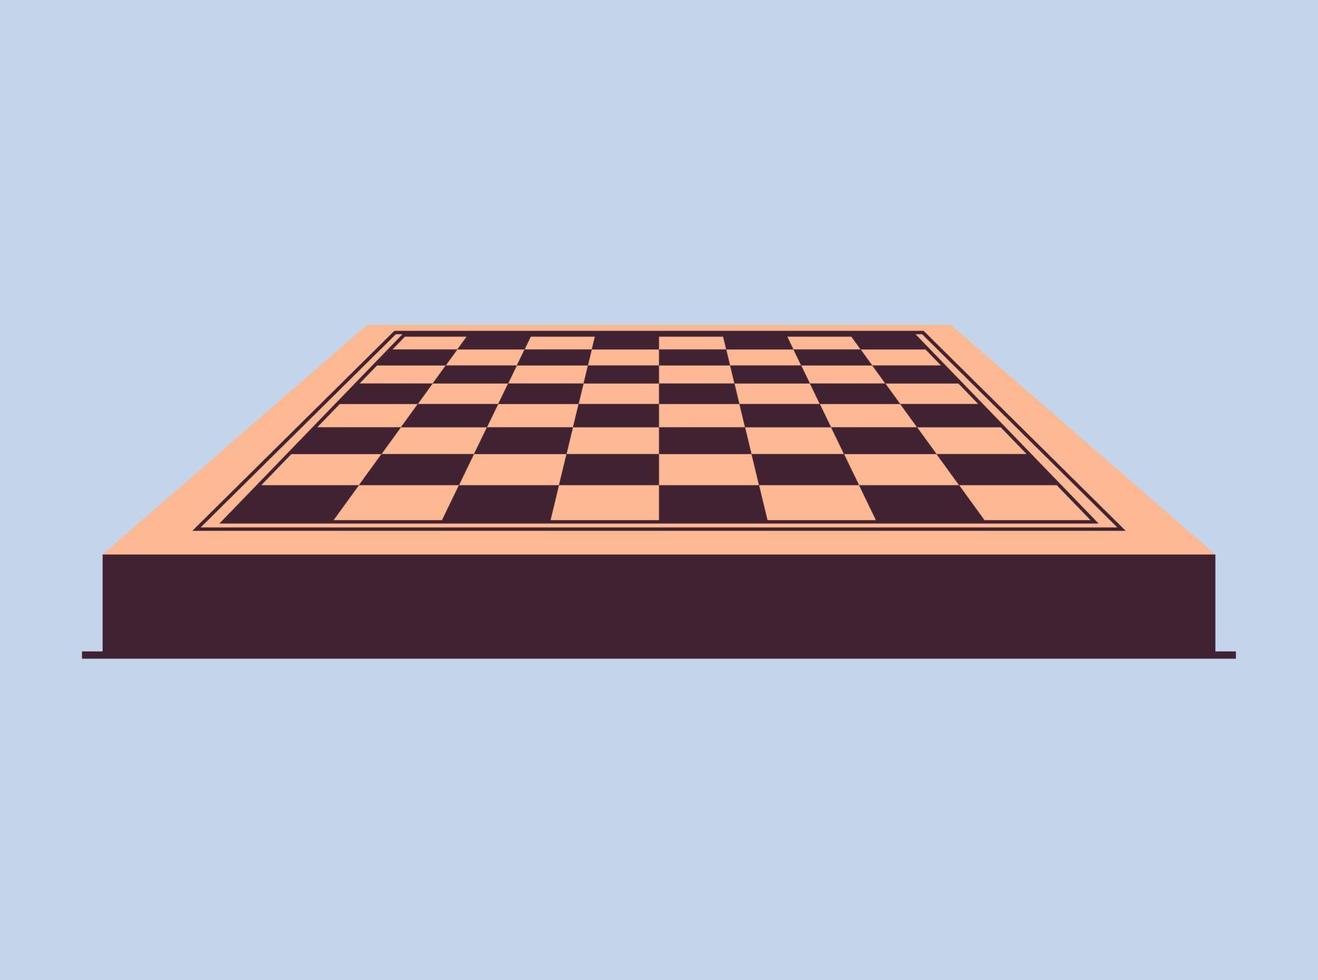 tablero de ajedrez y juego de estrategia de tablero de ajedrez blanco oscuro a cuadros, actividad de pasatiempo inteligente, competencia o concepto de torneo ilustración vectorial plana. vector